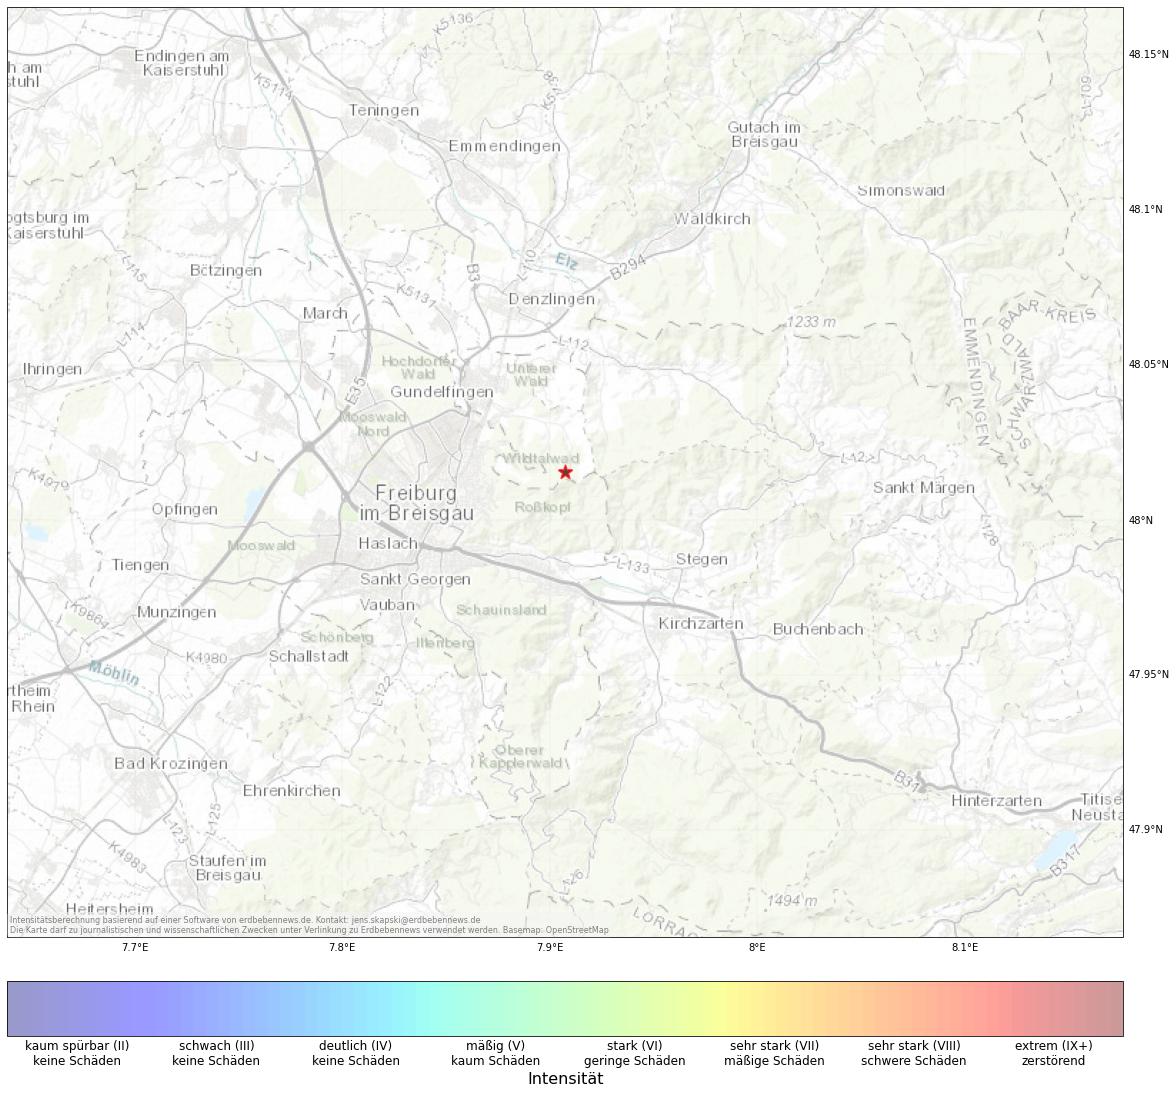 Berechnete Intensität (ShakeMap) des Erdbebens der Stärke 1.7 am 09. November, 19:18 in Deutschland